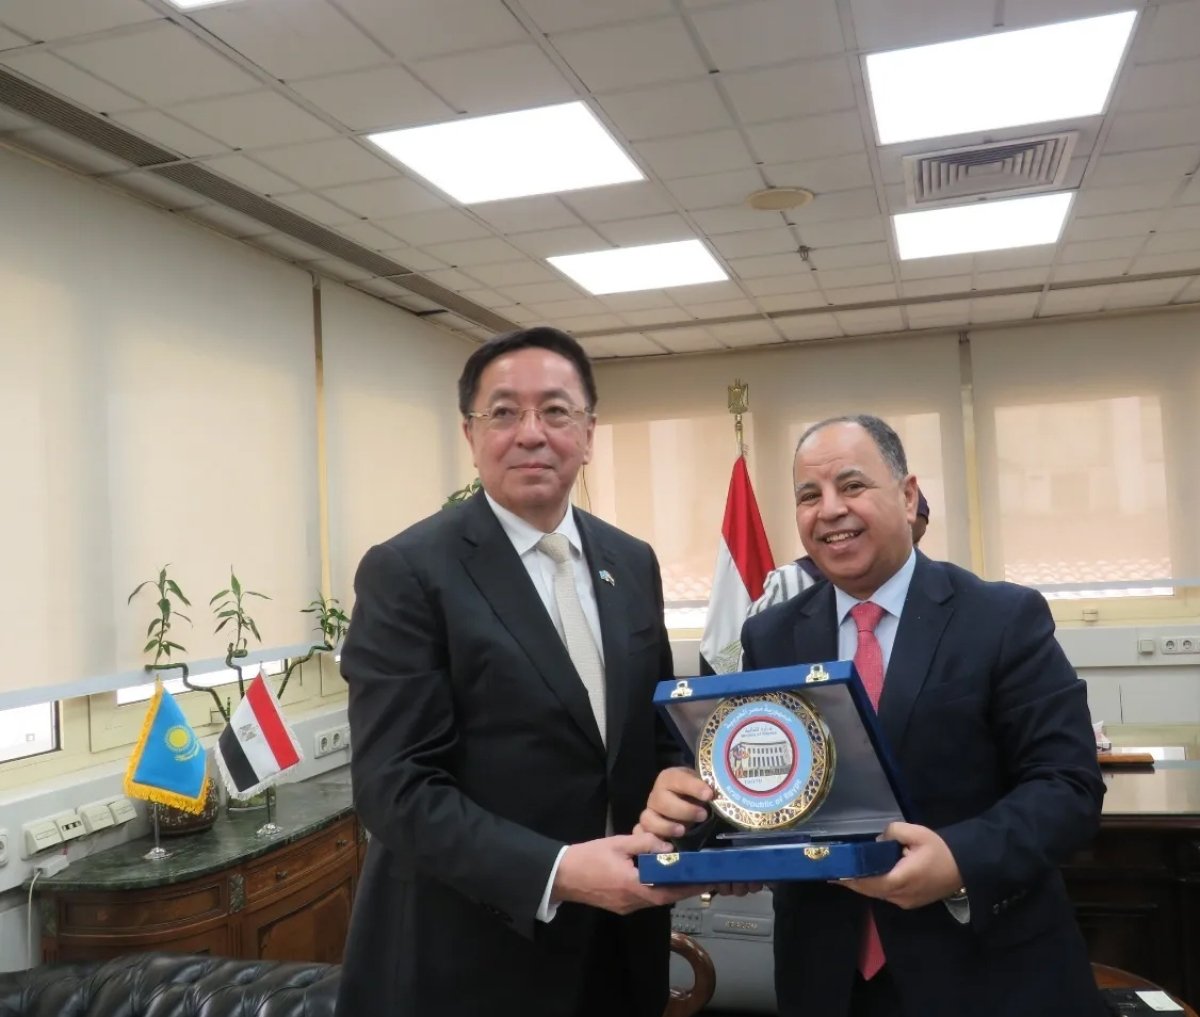 وزير المالية: تعزيز العلاقات الاقتصادية وتشجيع الاستثمارات بين مصر وكازاخستان